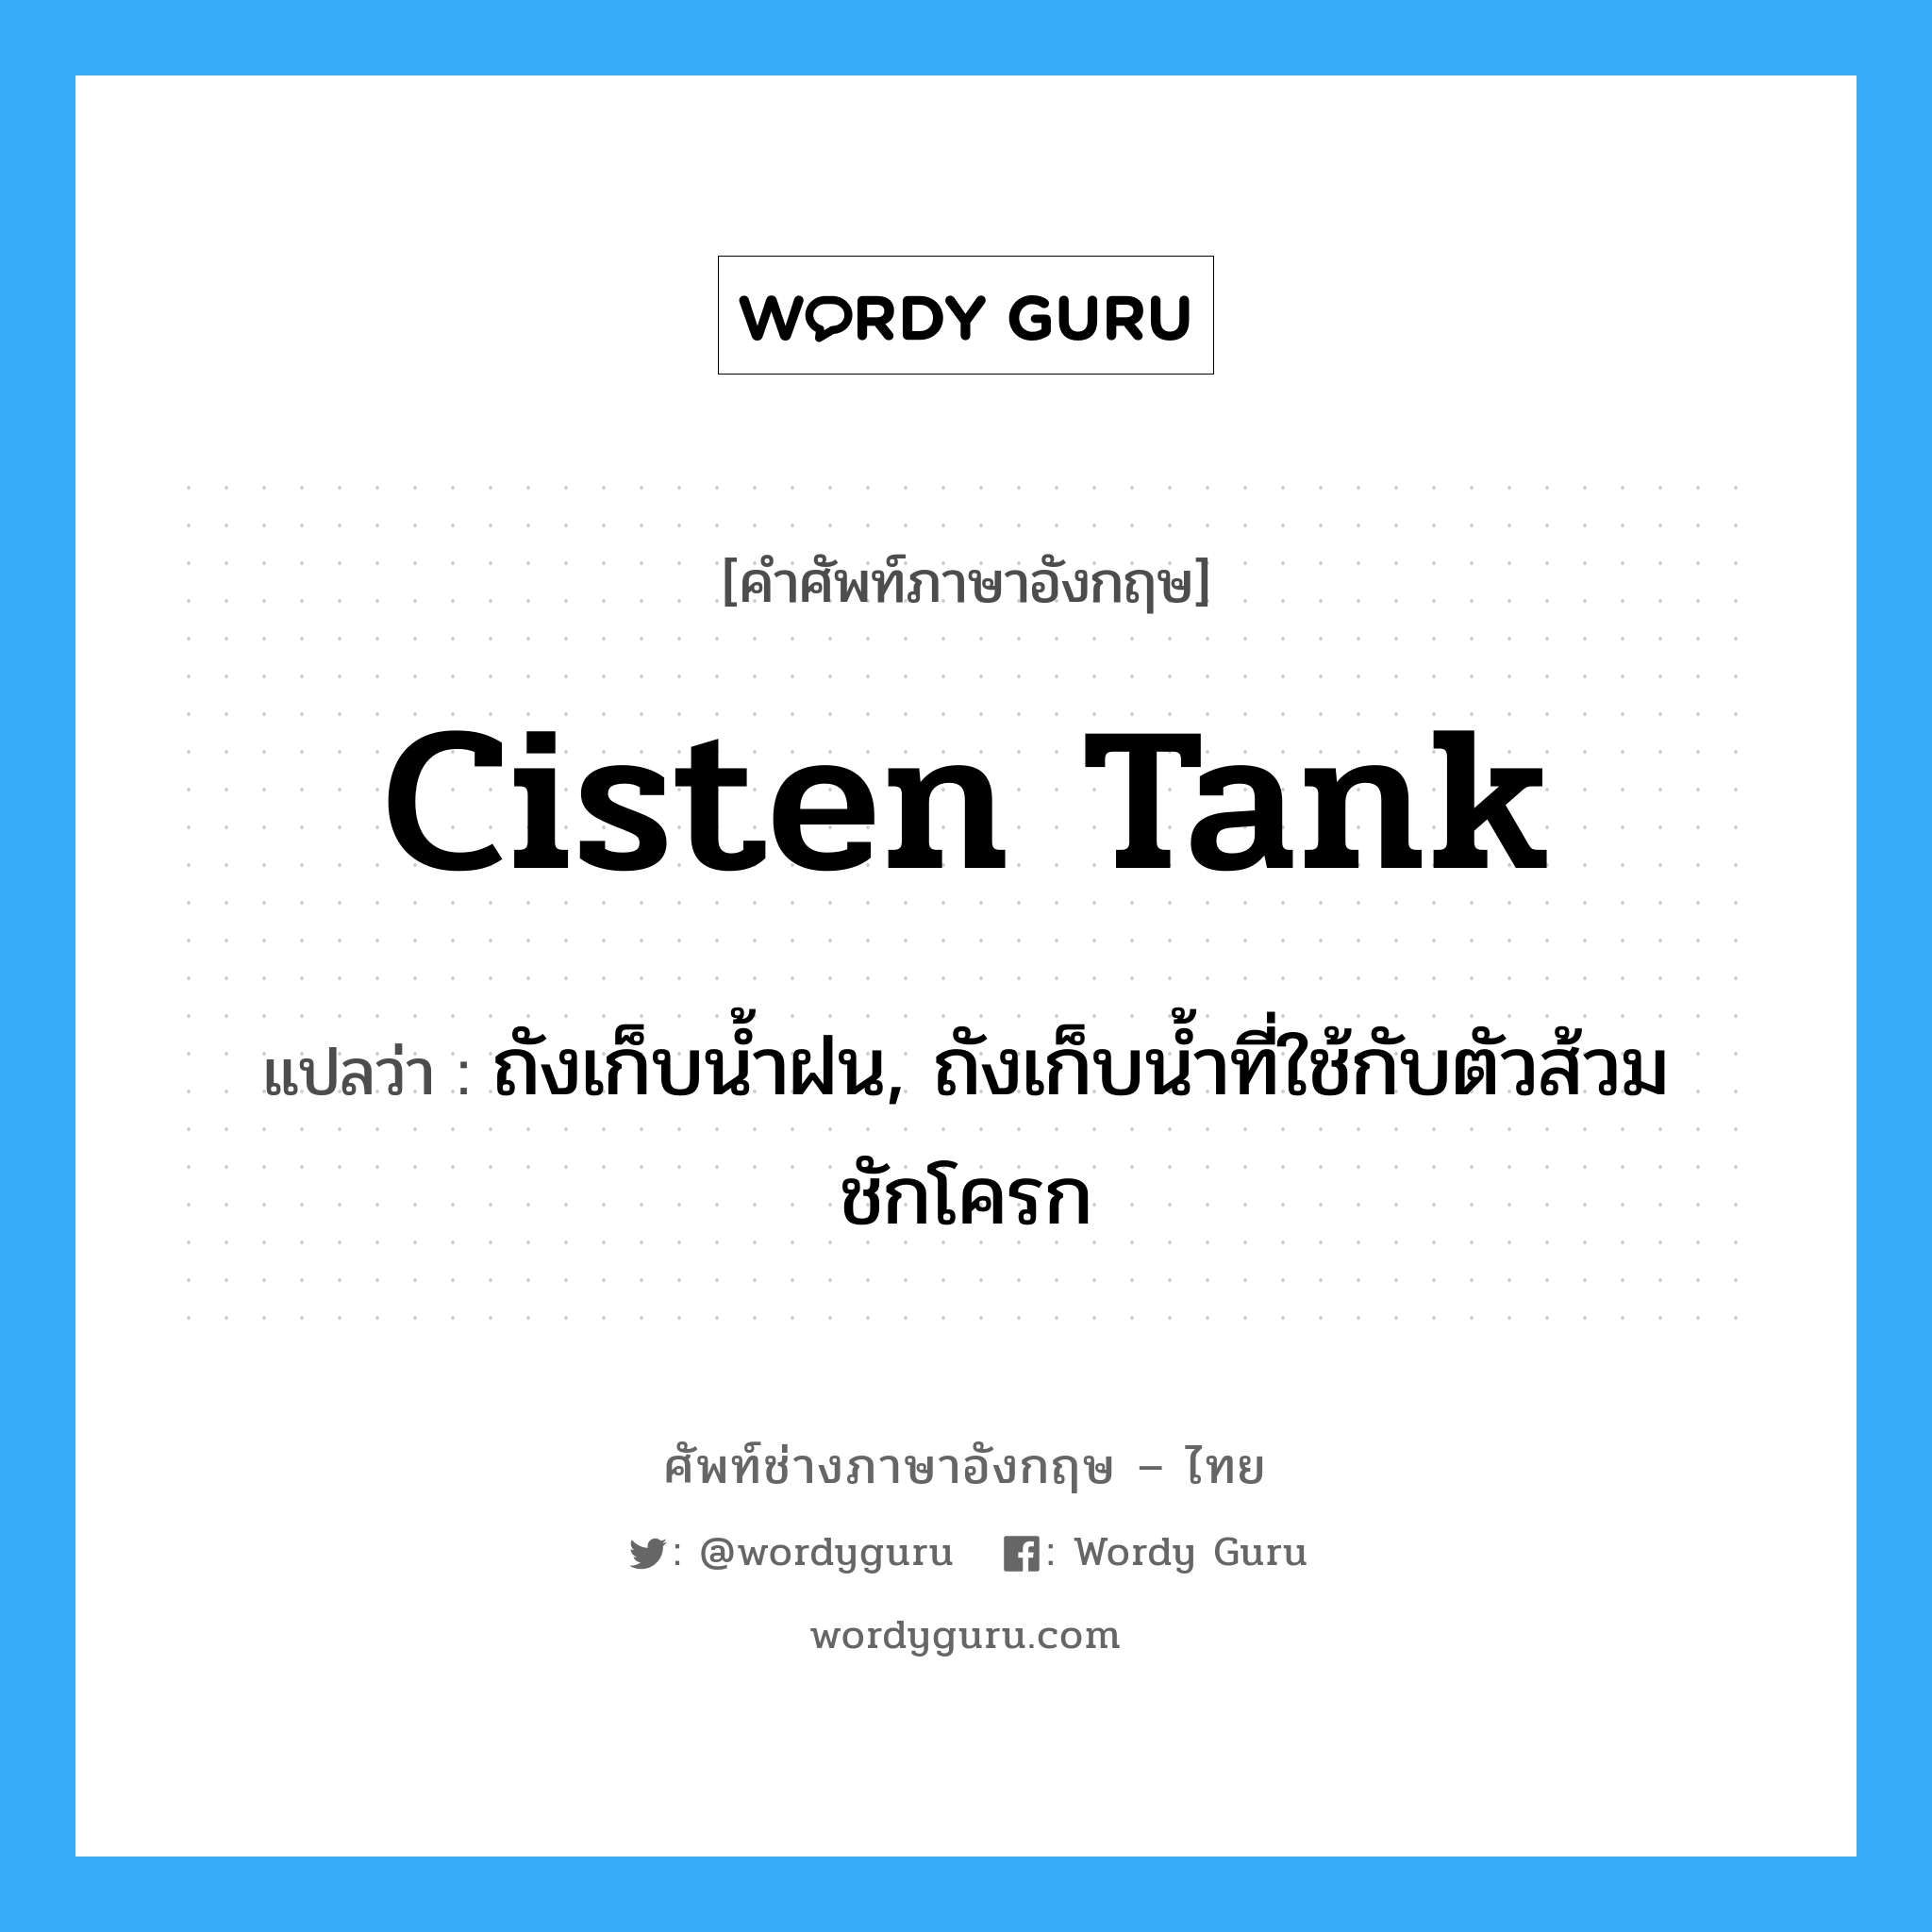 cisten tank แปลว่า?, คำศัพท์ช่างภาษาอังกฤษ - ไทย cisten tank คำศัพท์ภาษาอังกฤษ cisten tank แปลว่า ถังเก็บน้ำฝน, ถังเก็บน้ำที่ใช้กับตัวส้วมชักโครก